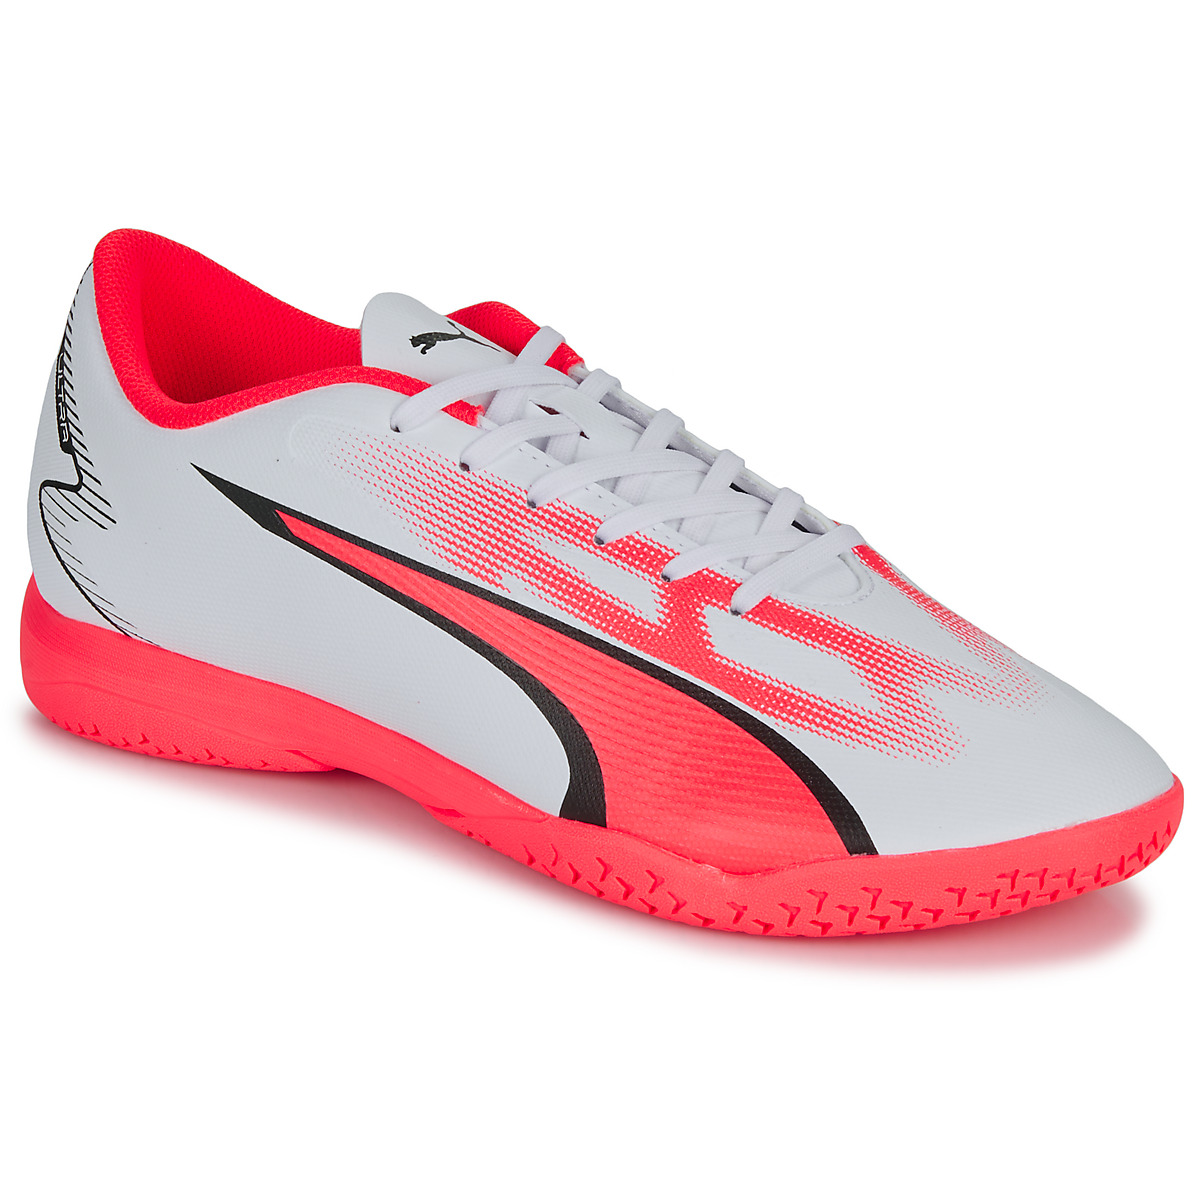 Παπούτσια Άνδρας Ποδοσφαίρου Puma ULTRA PLAY IT Άσπρο / Red / Black